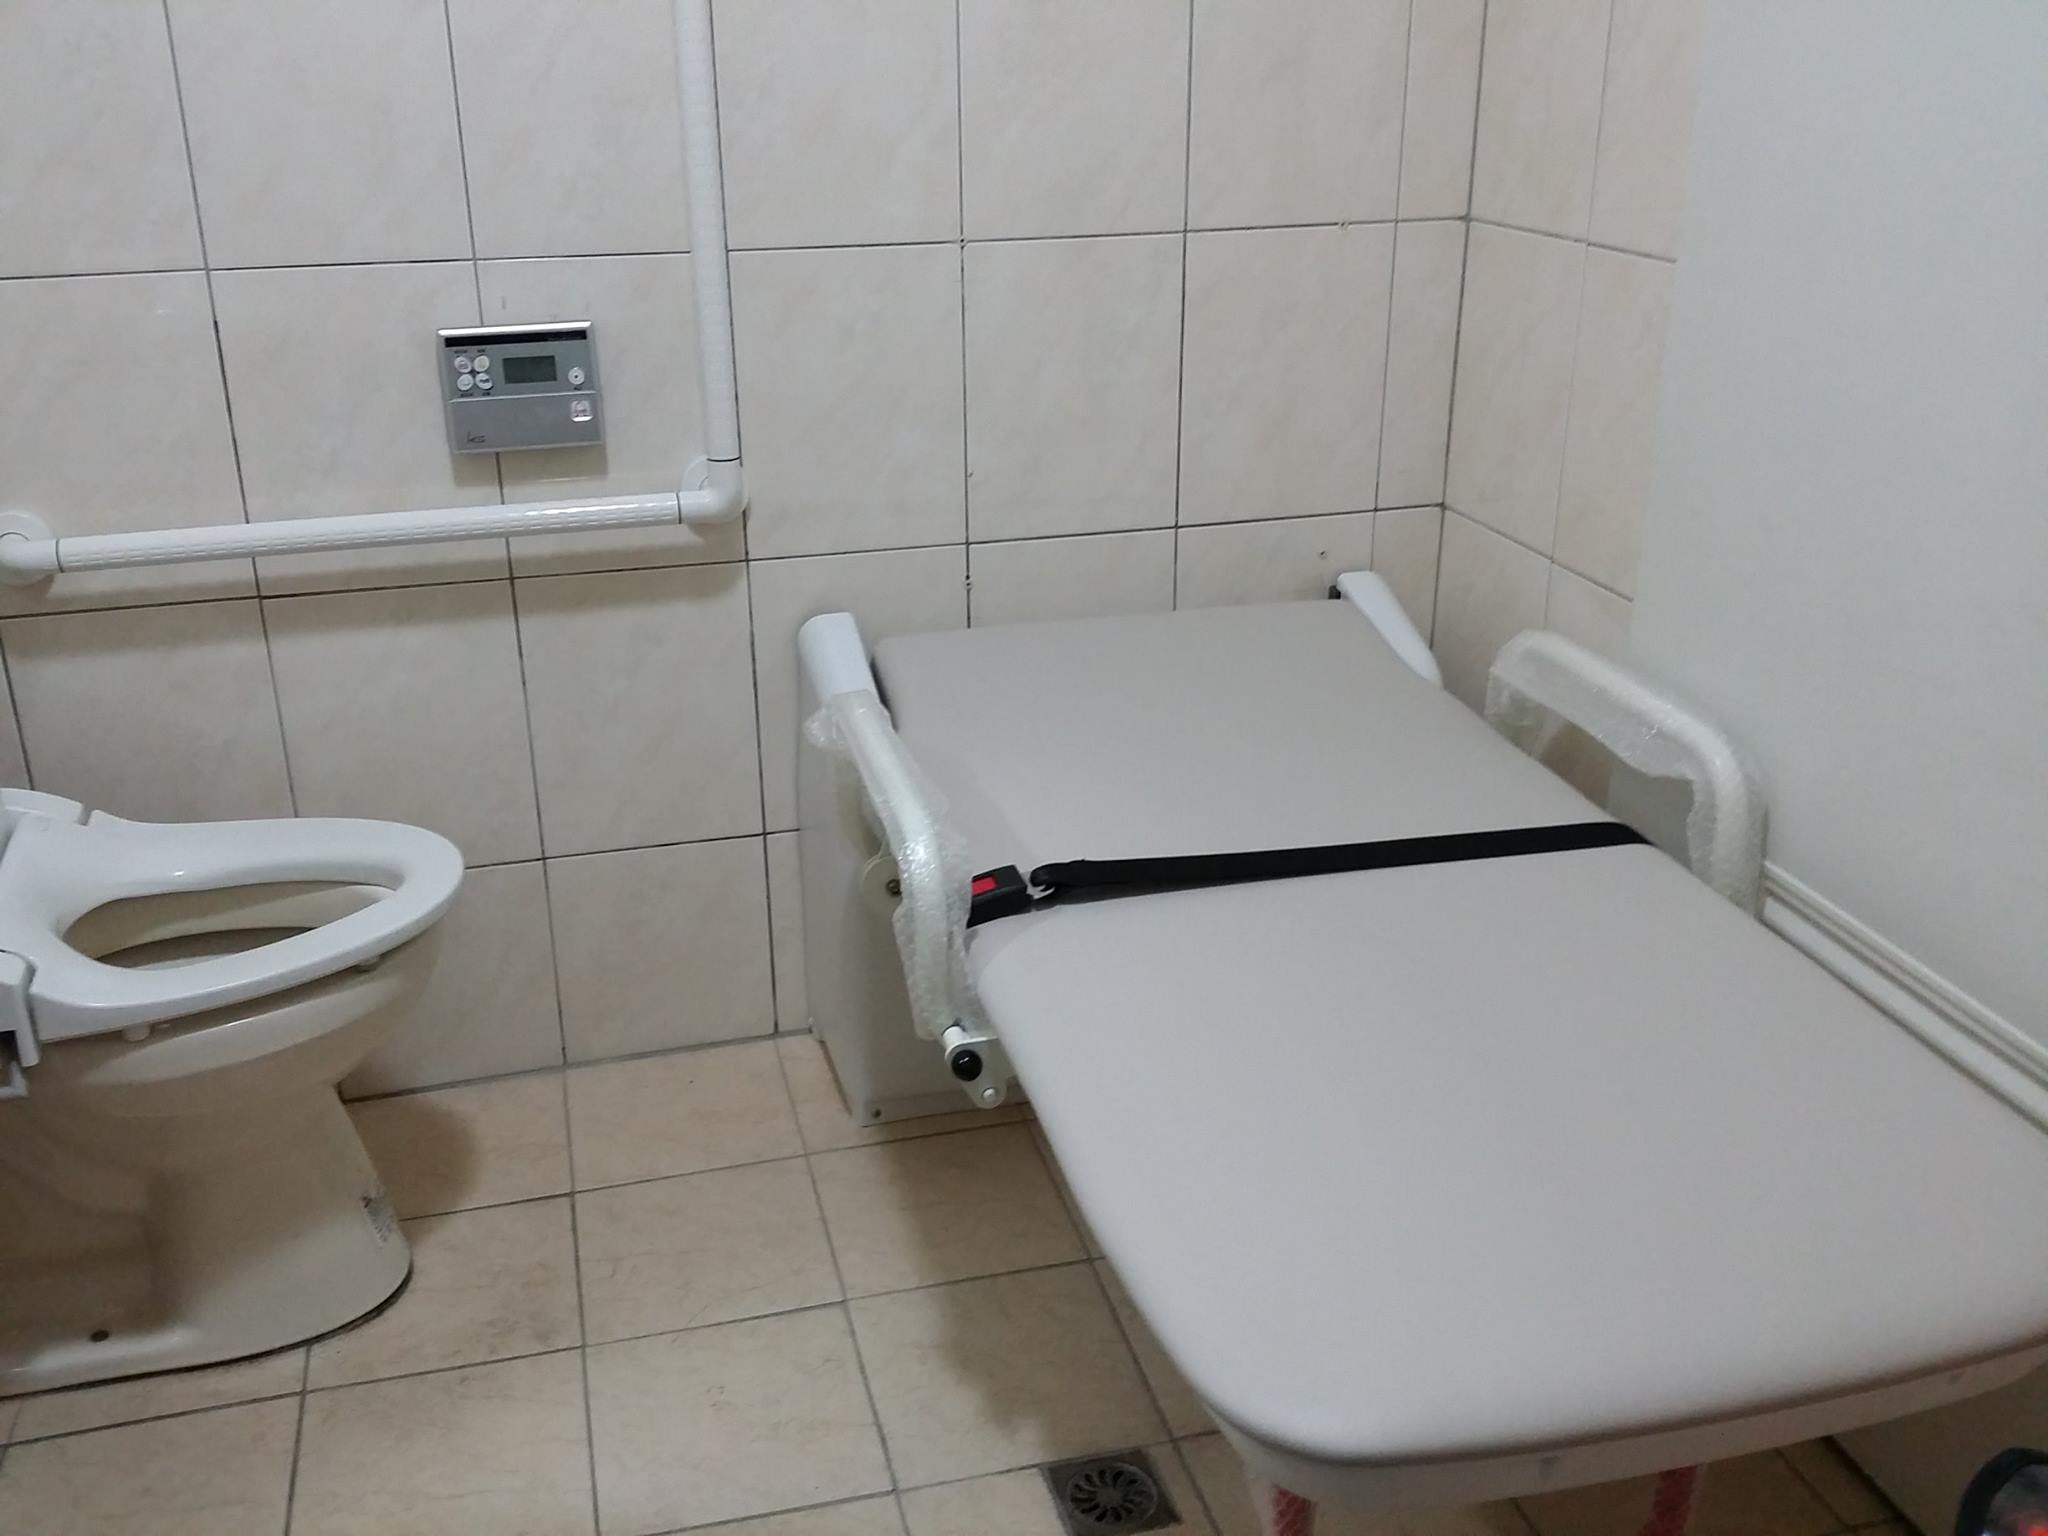 重障者安全如廁的重要輔具–照護床